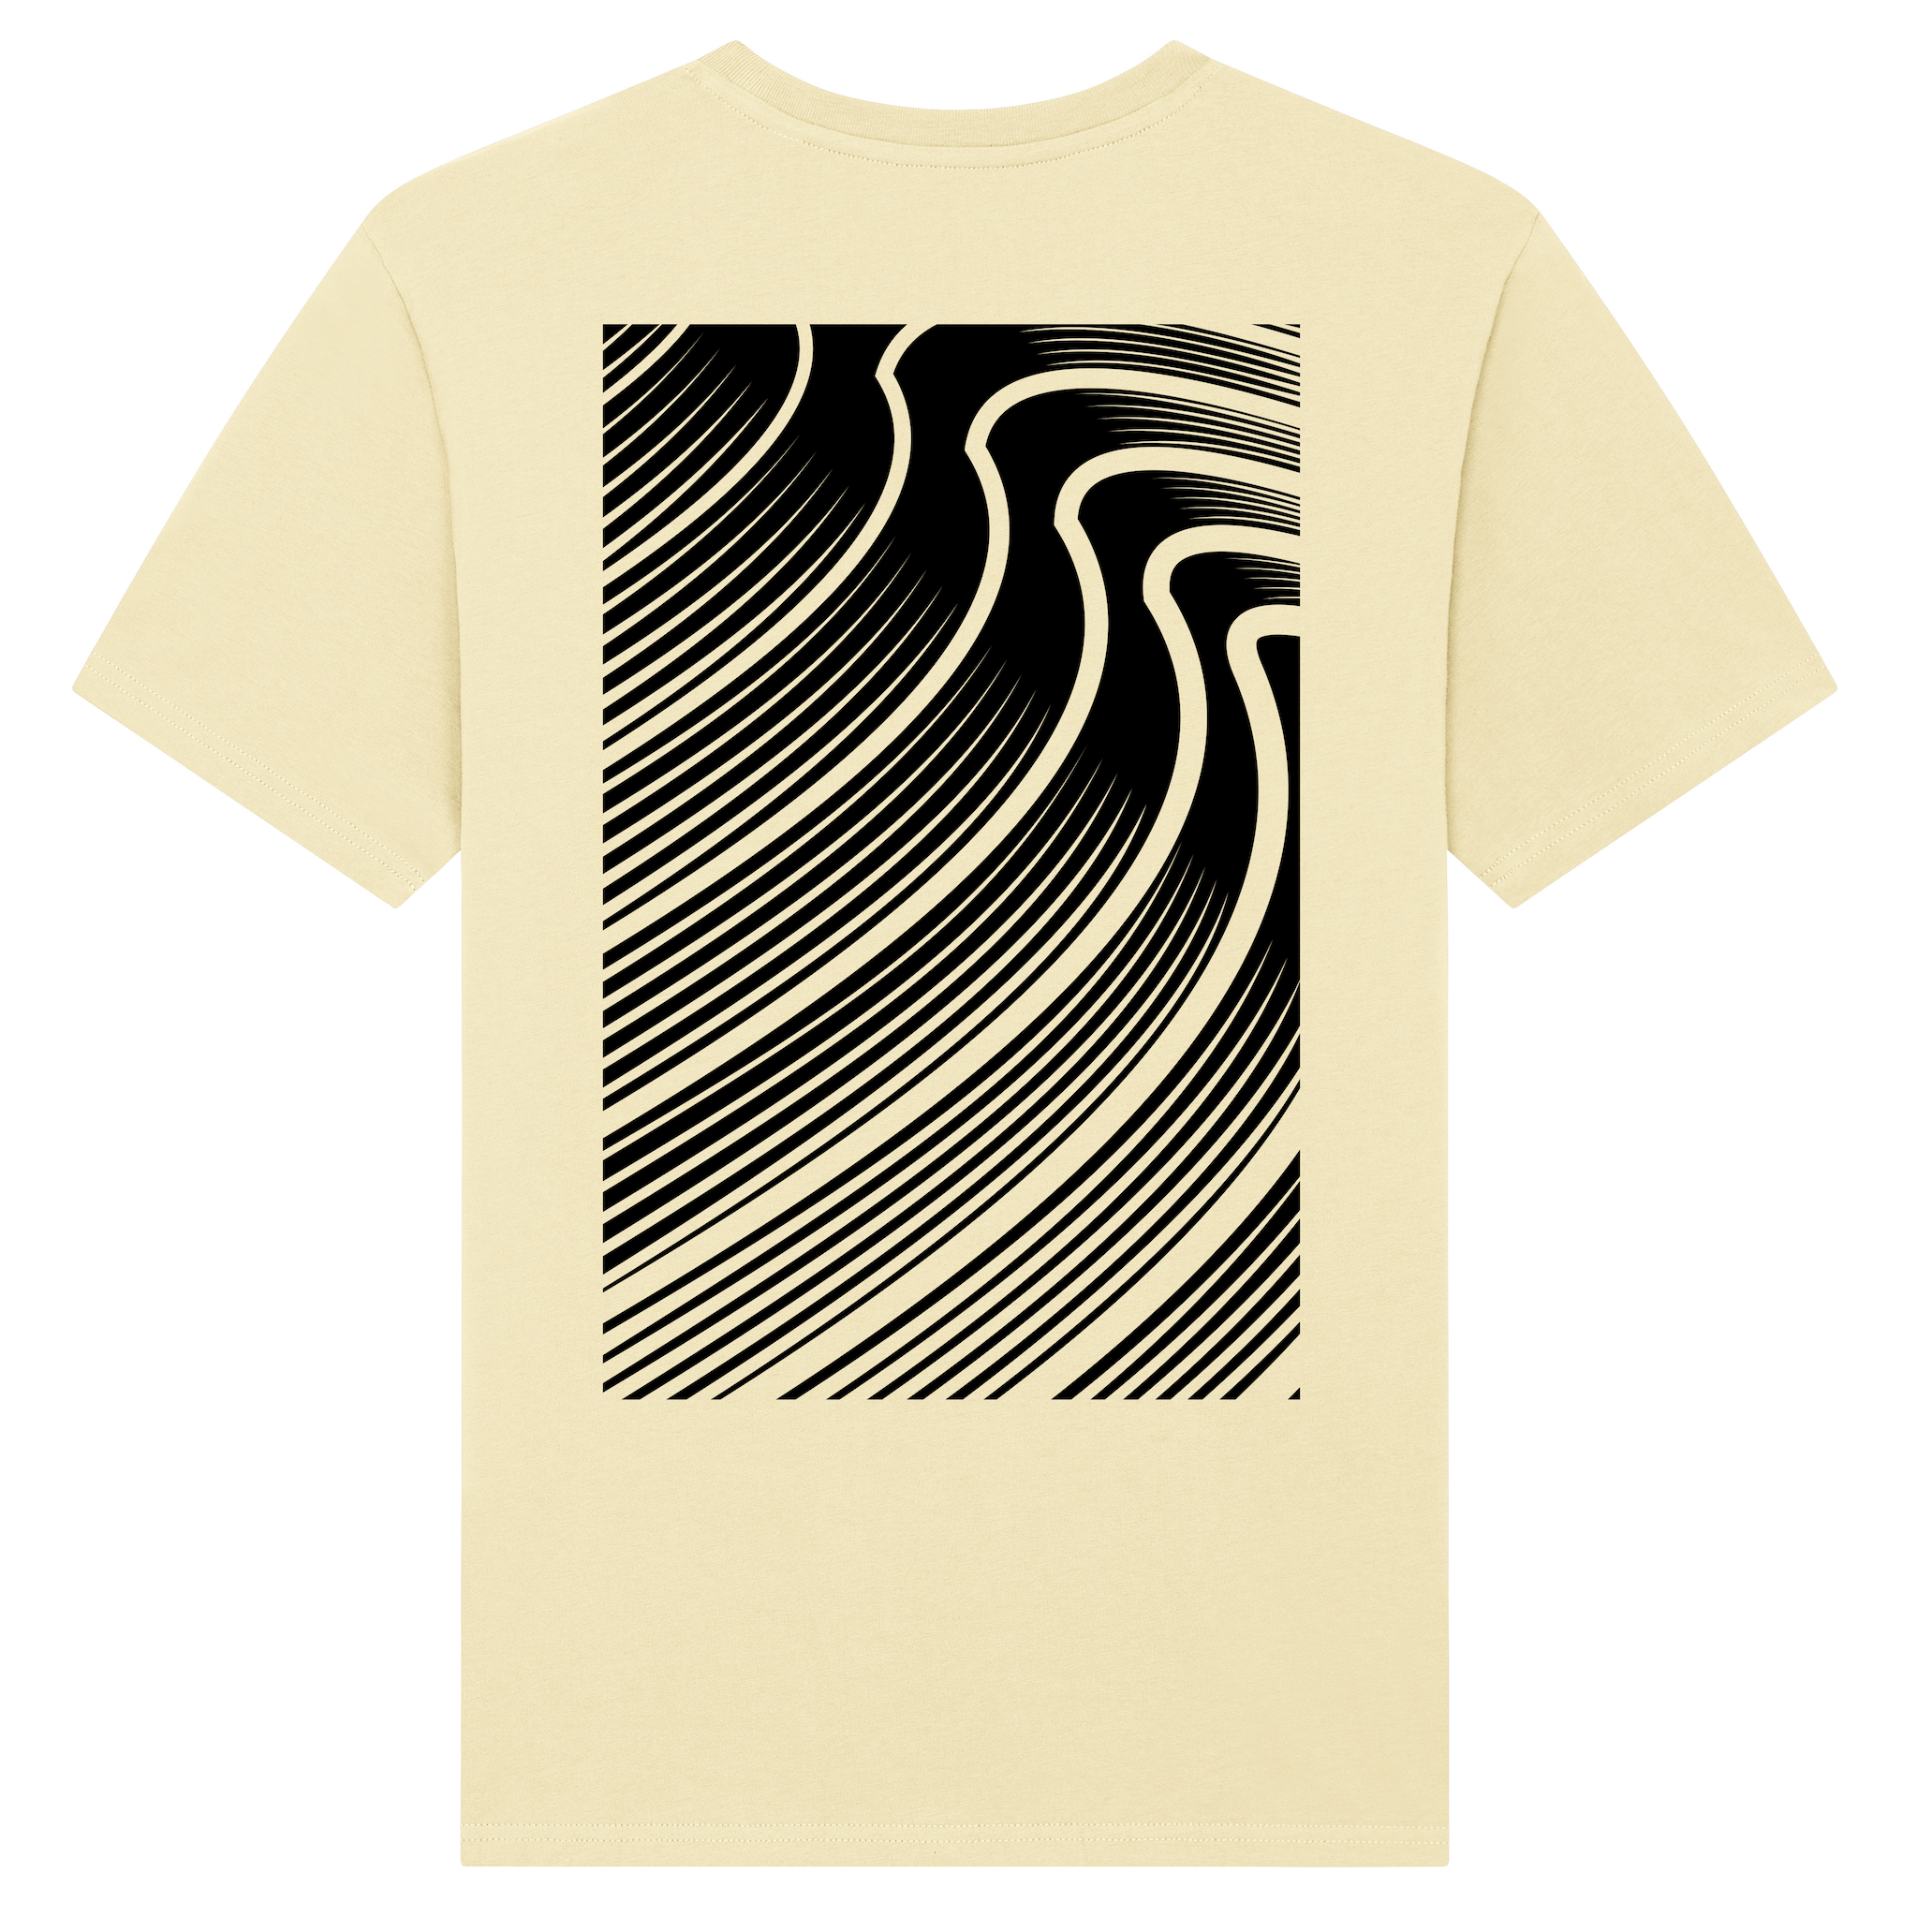 Geel T-shirt met kunstzinnig surf-golven design - Vang de kracht van de zee in stijl 